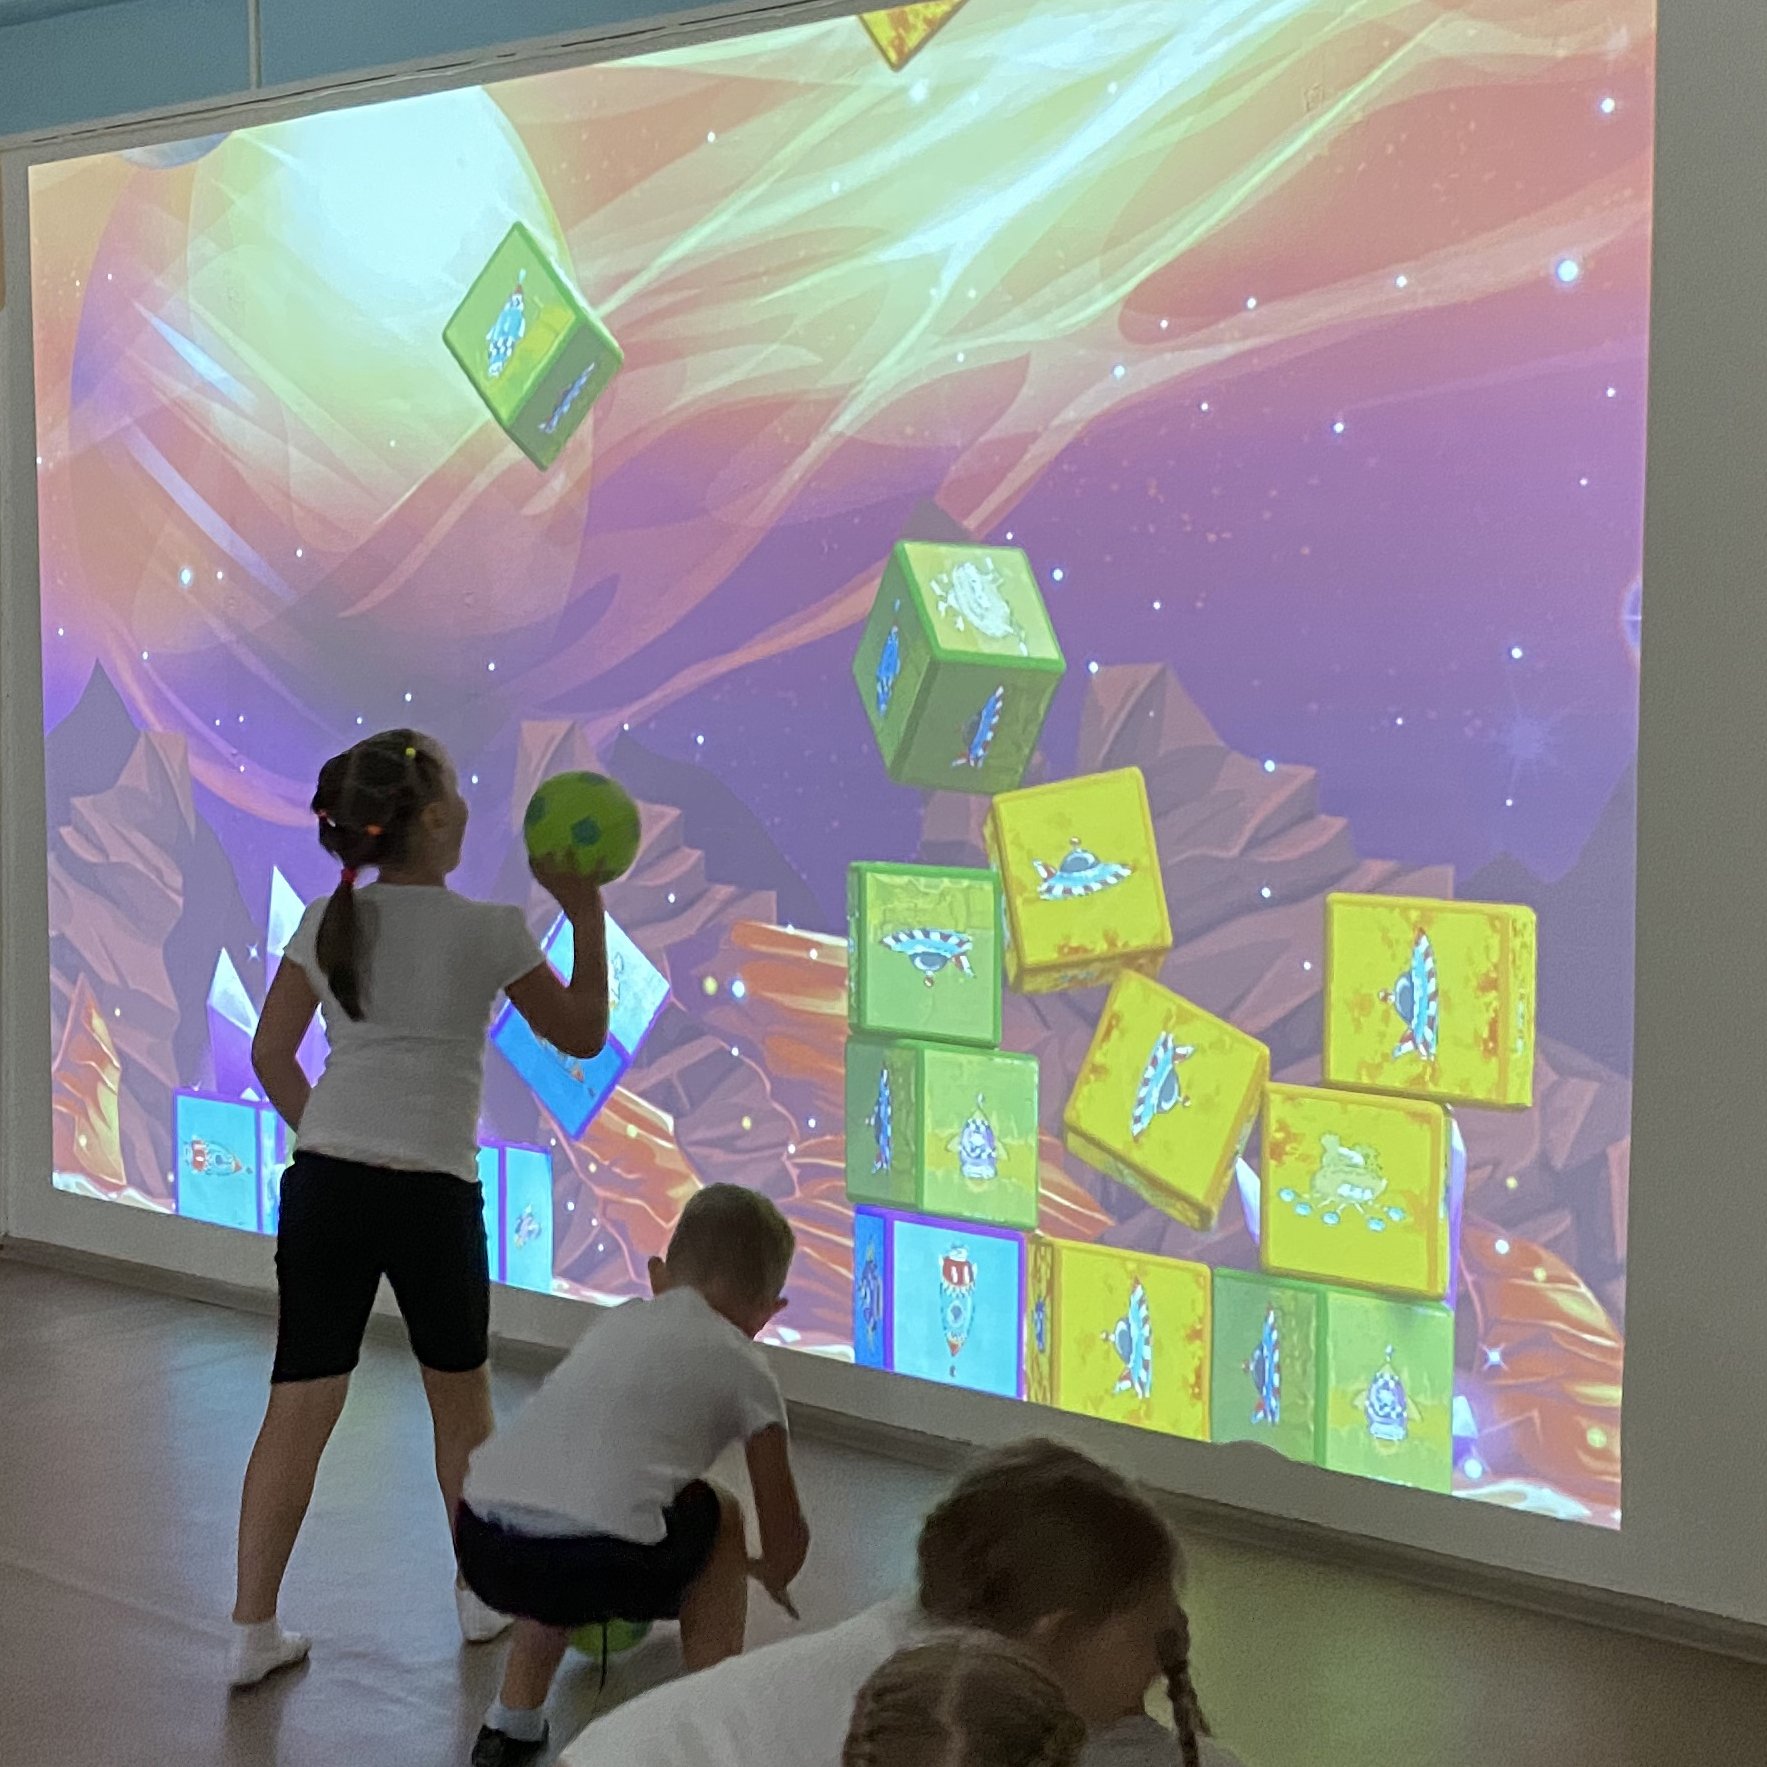 Интерактивная стена купить. Интерактивная стена кидалки. Интерактивная стена кидалки в корпусе с камерой Kinect. Интерактивная стена спортбол. Интерактивная стена для детей.